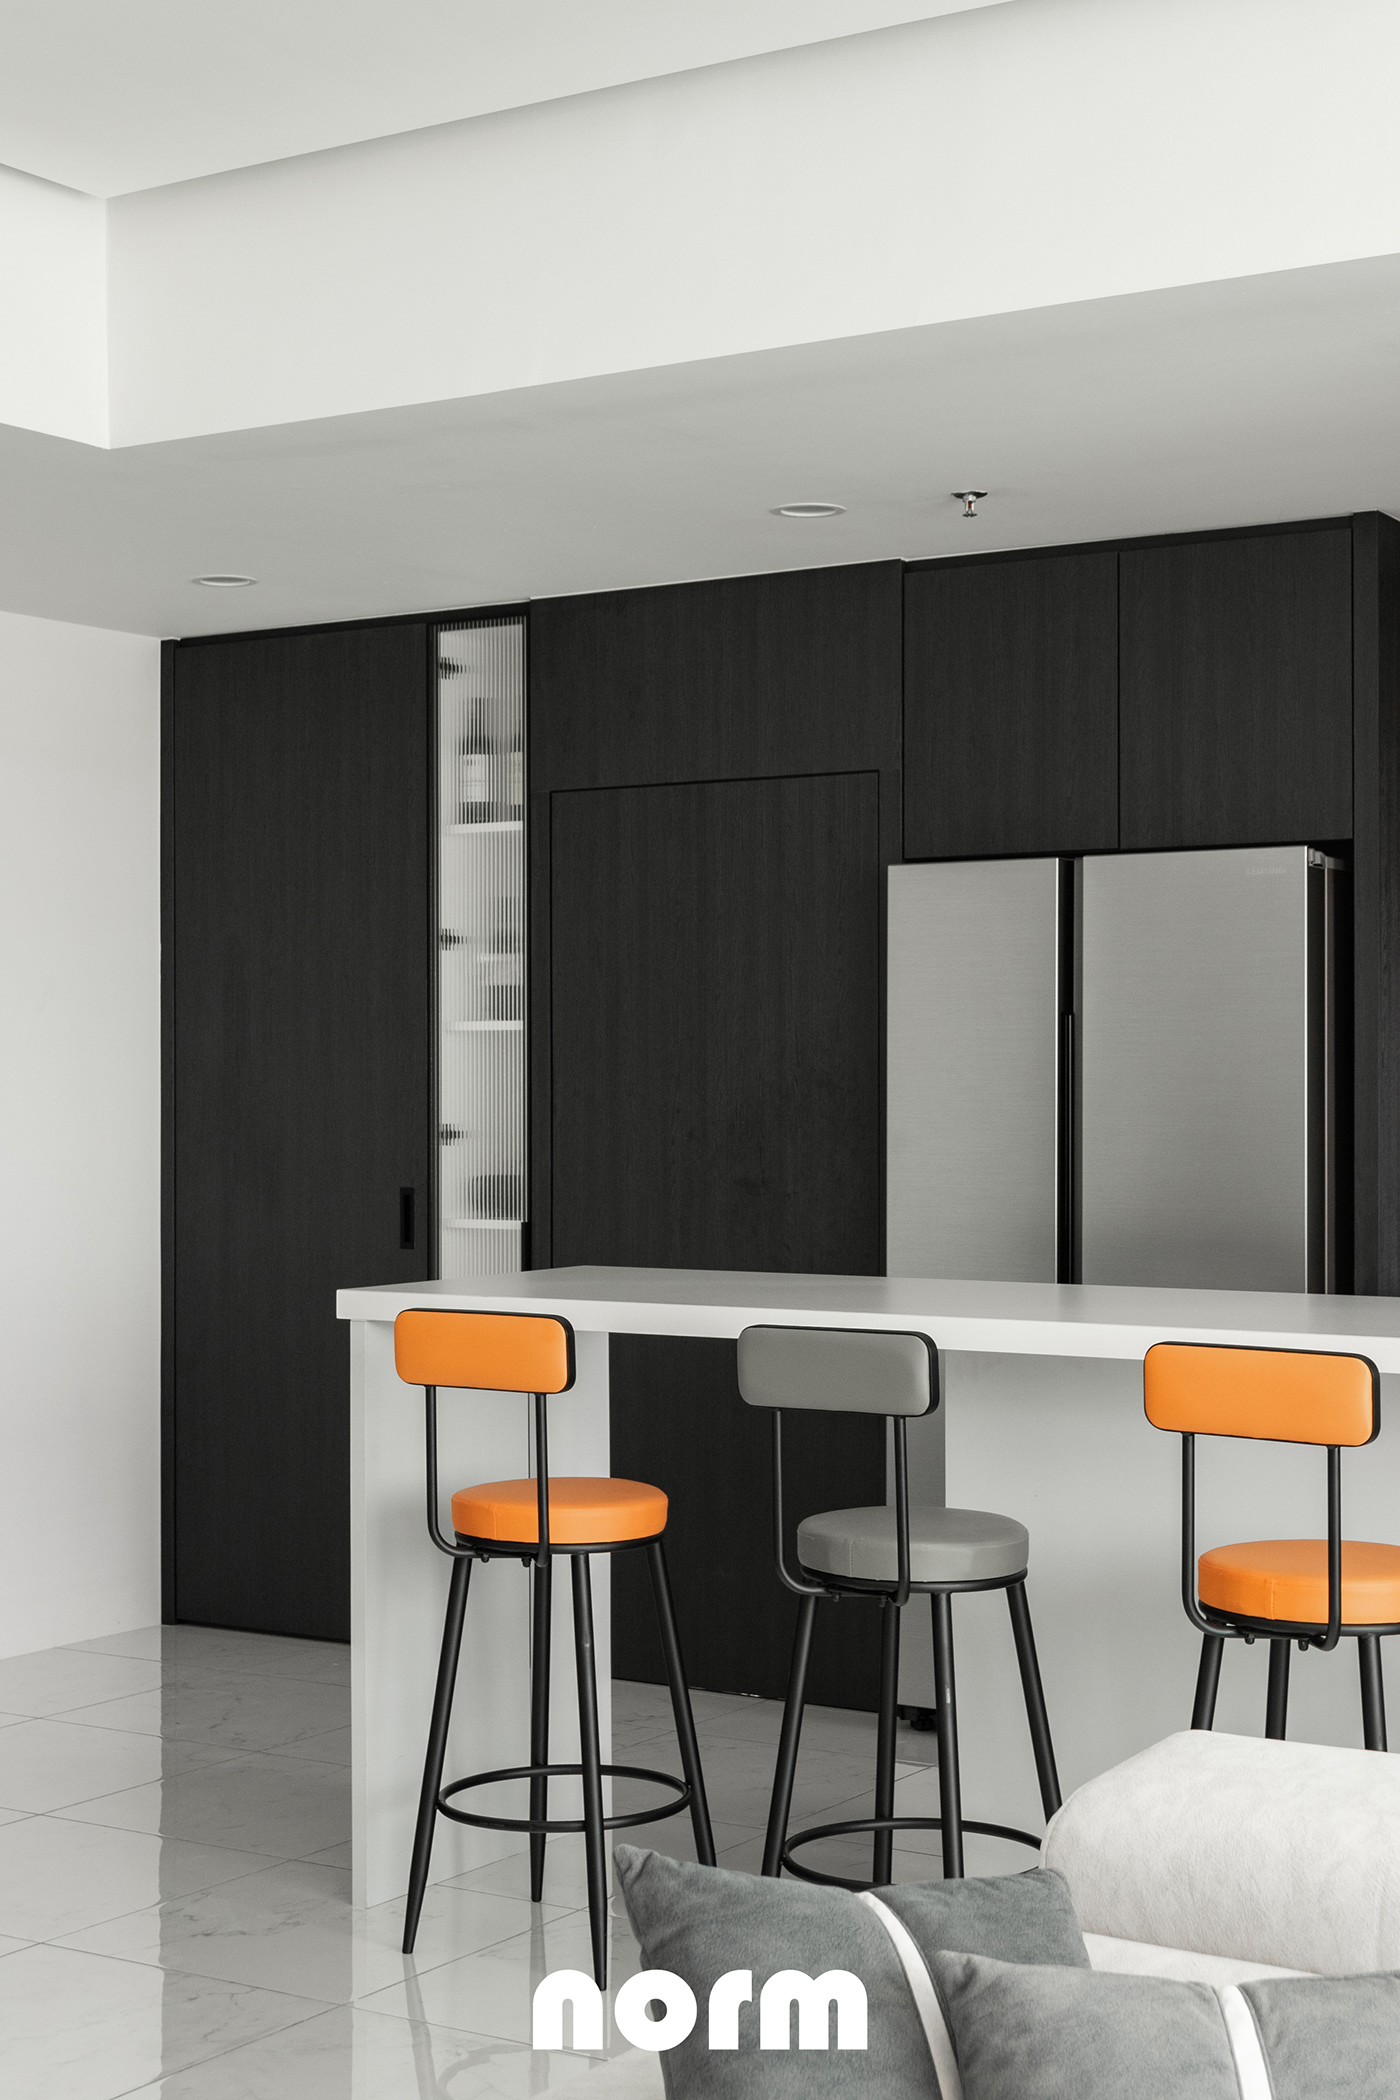 Interior interior deisgn kitchen living modern